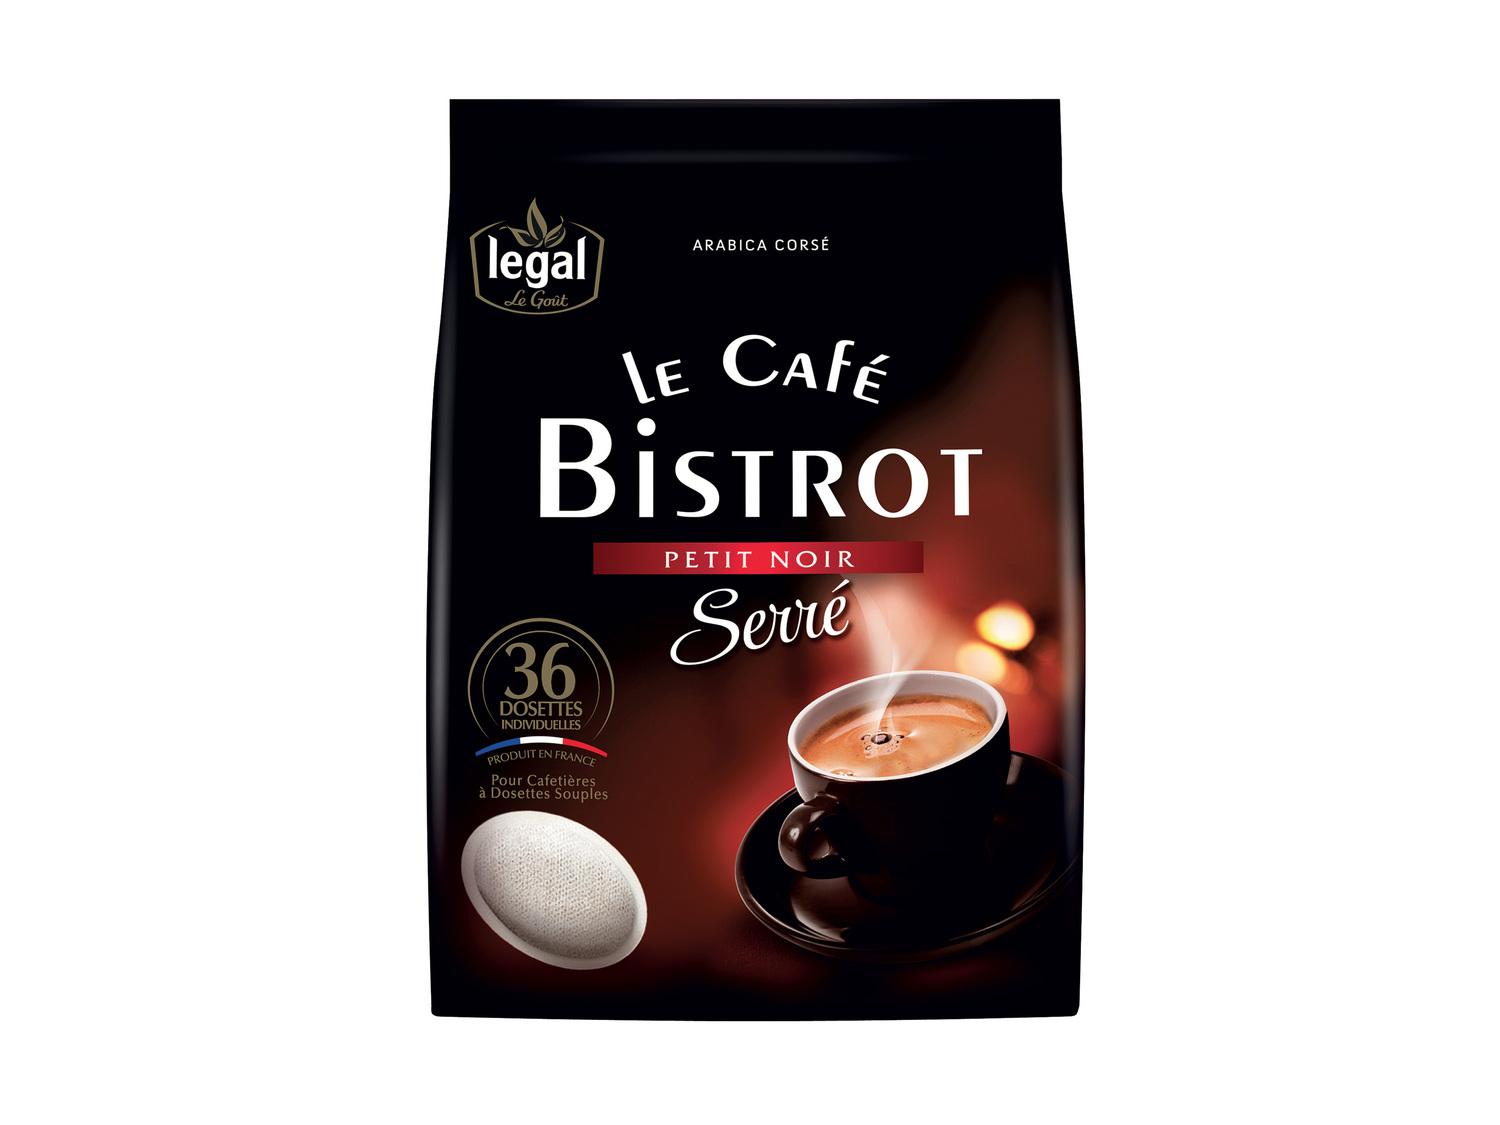 Legal le café bistrot , le prix 2.15 €  
-  Au choix : serré ou classique